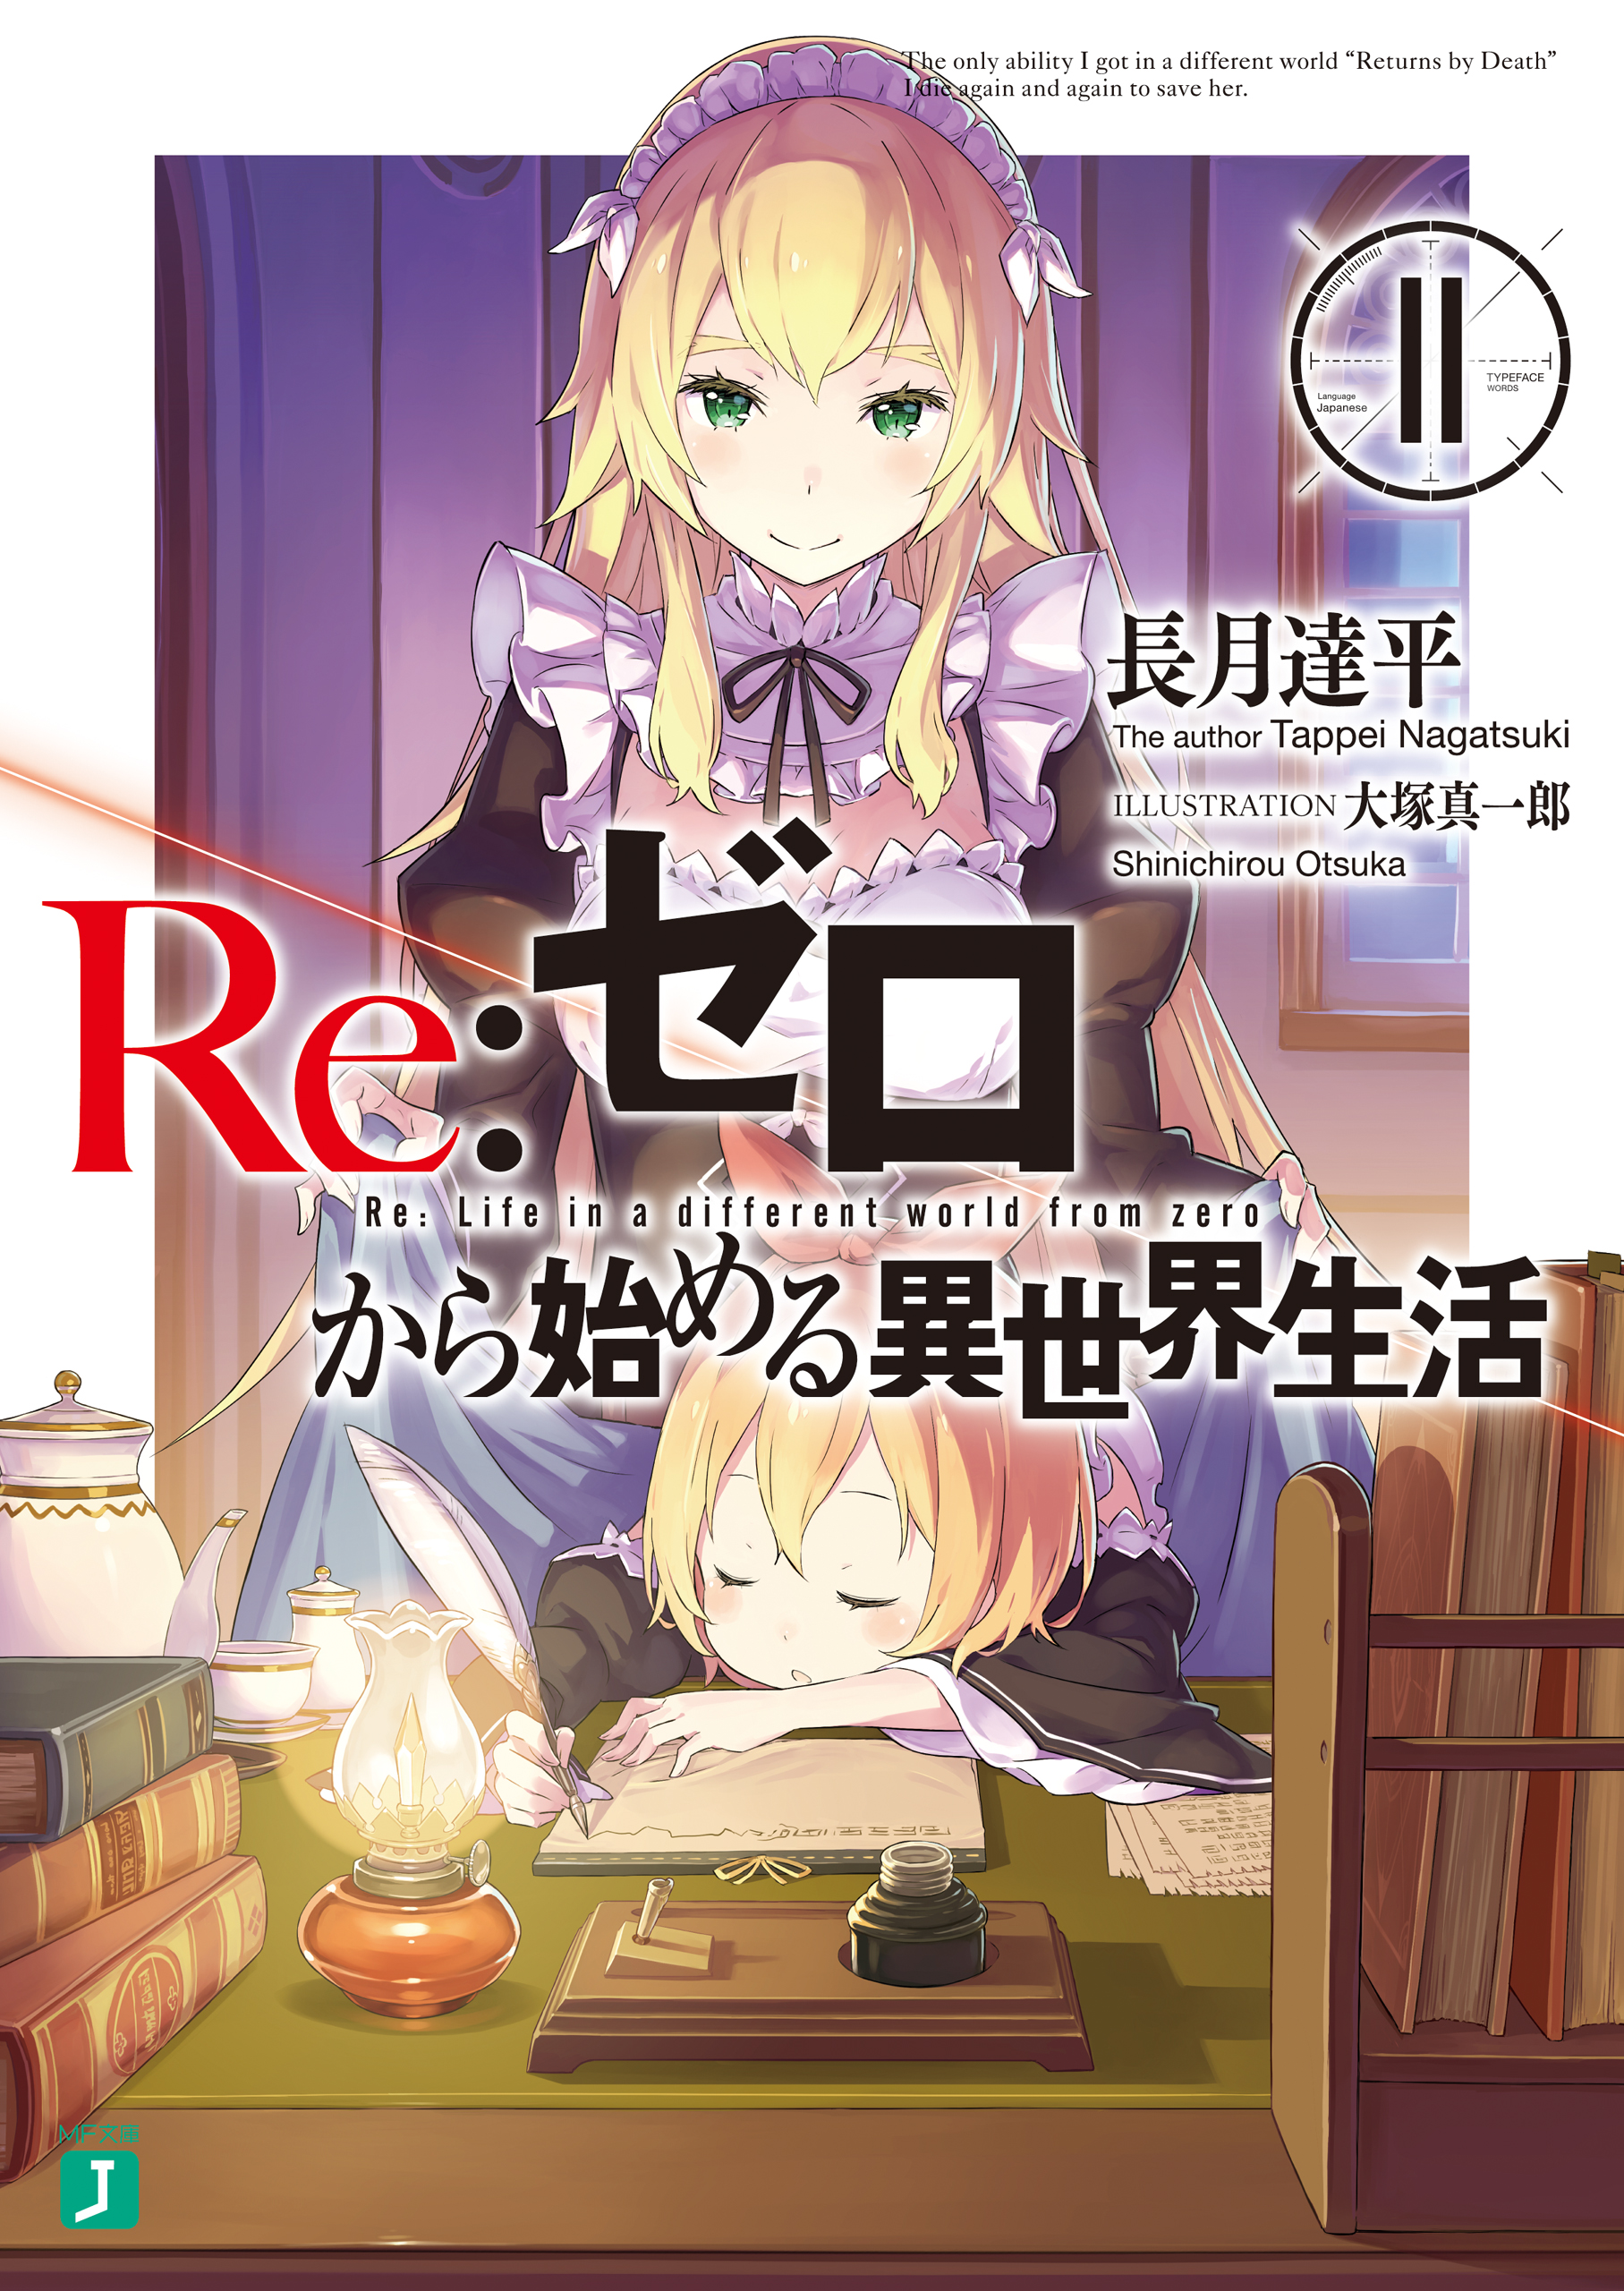 Re:Zero Light Novel Volume 11 | Re:Zero Wiki